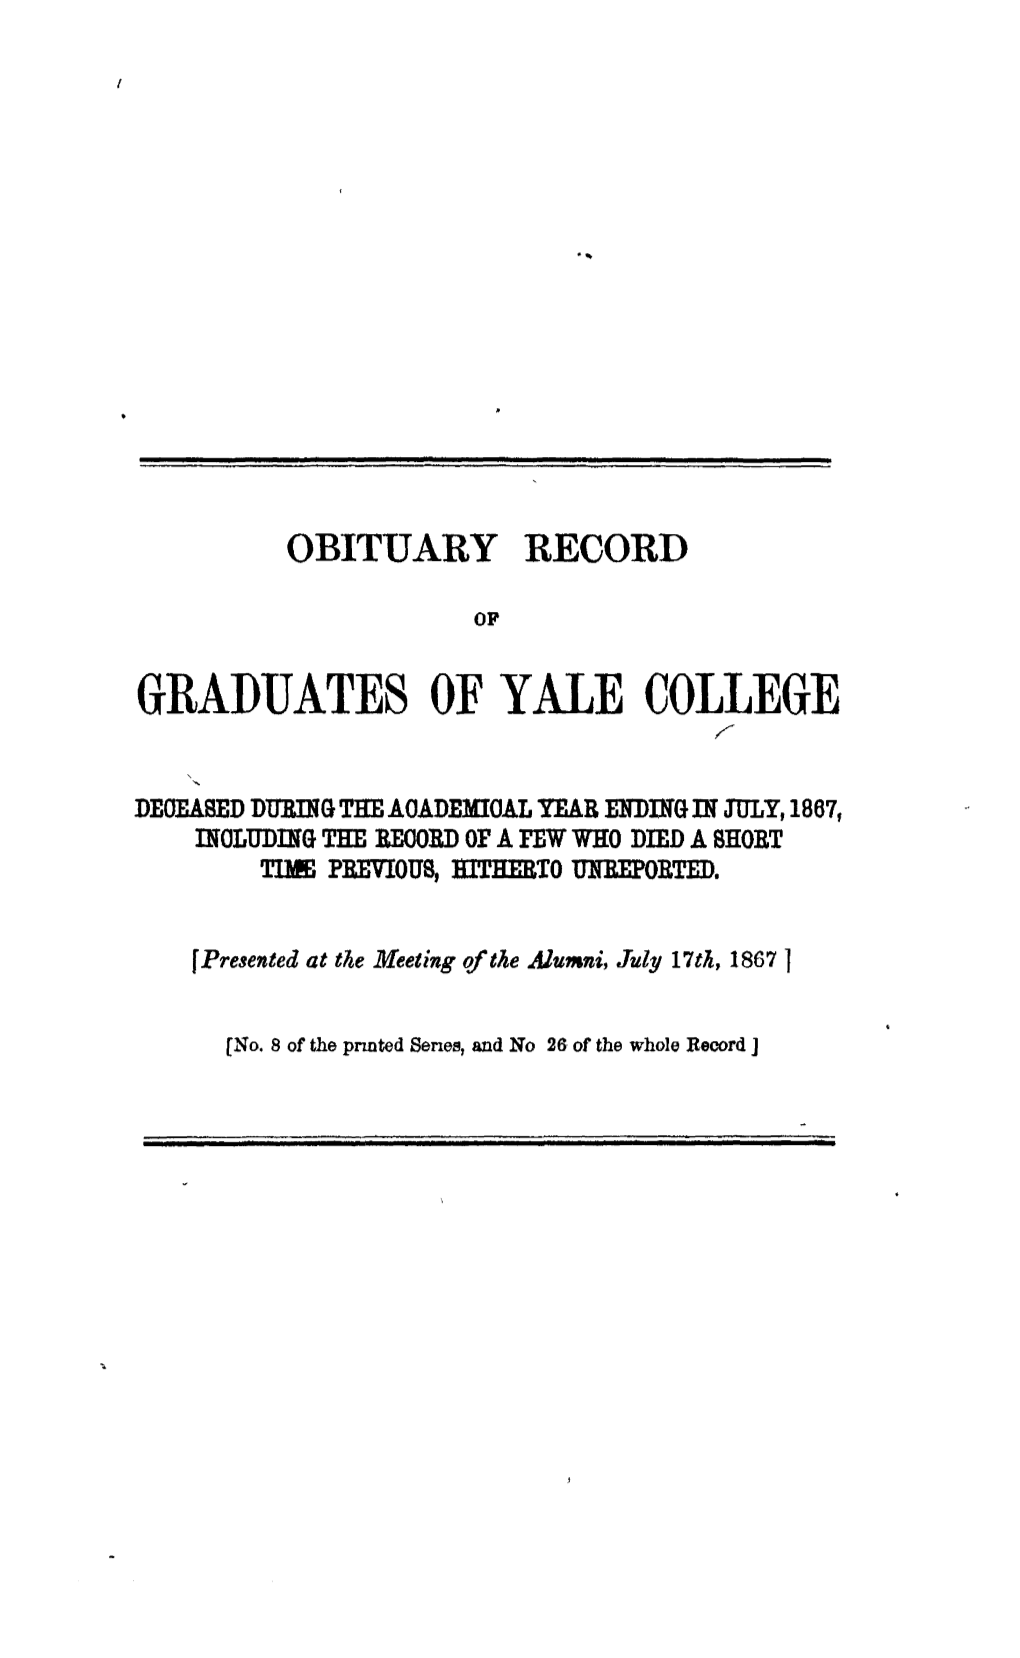 1866-1867 Obituary Record of Graduates of Yale University